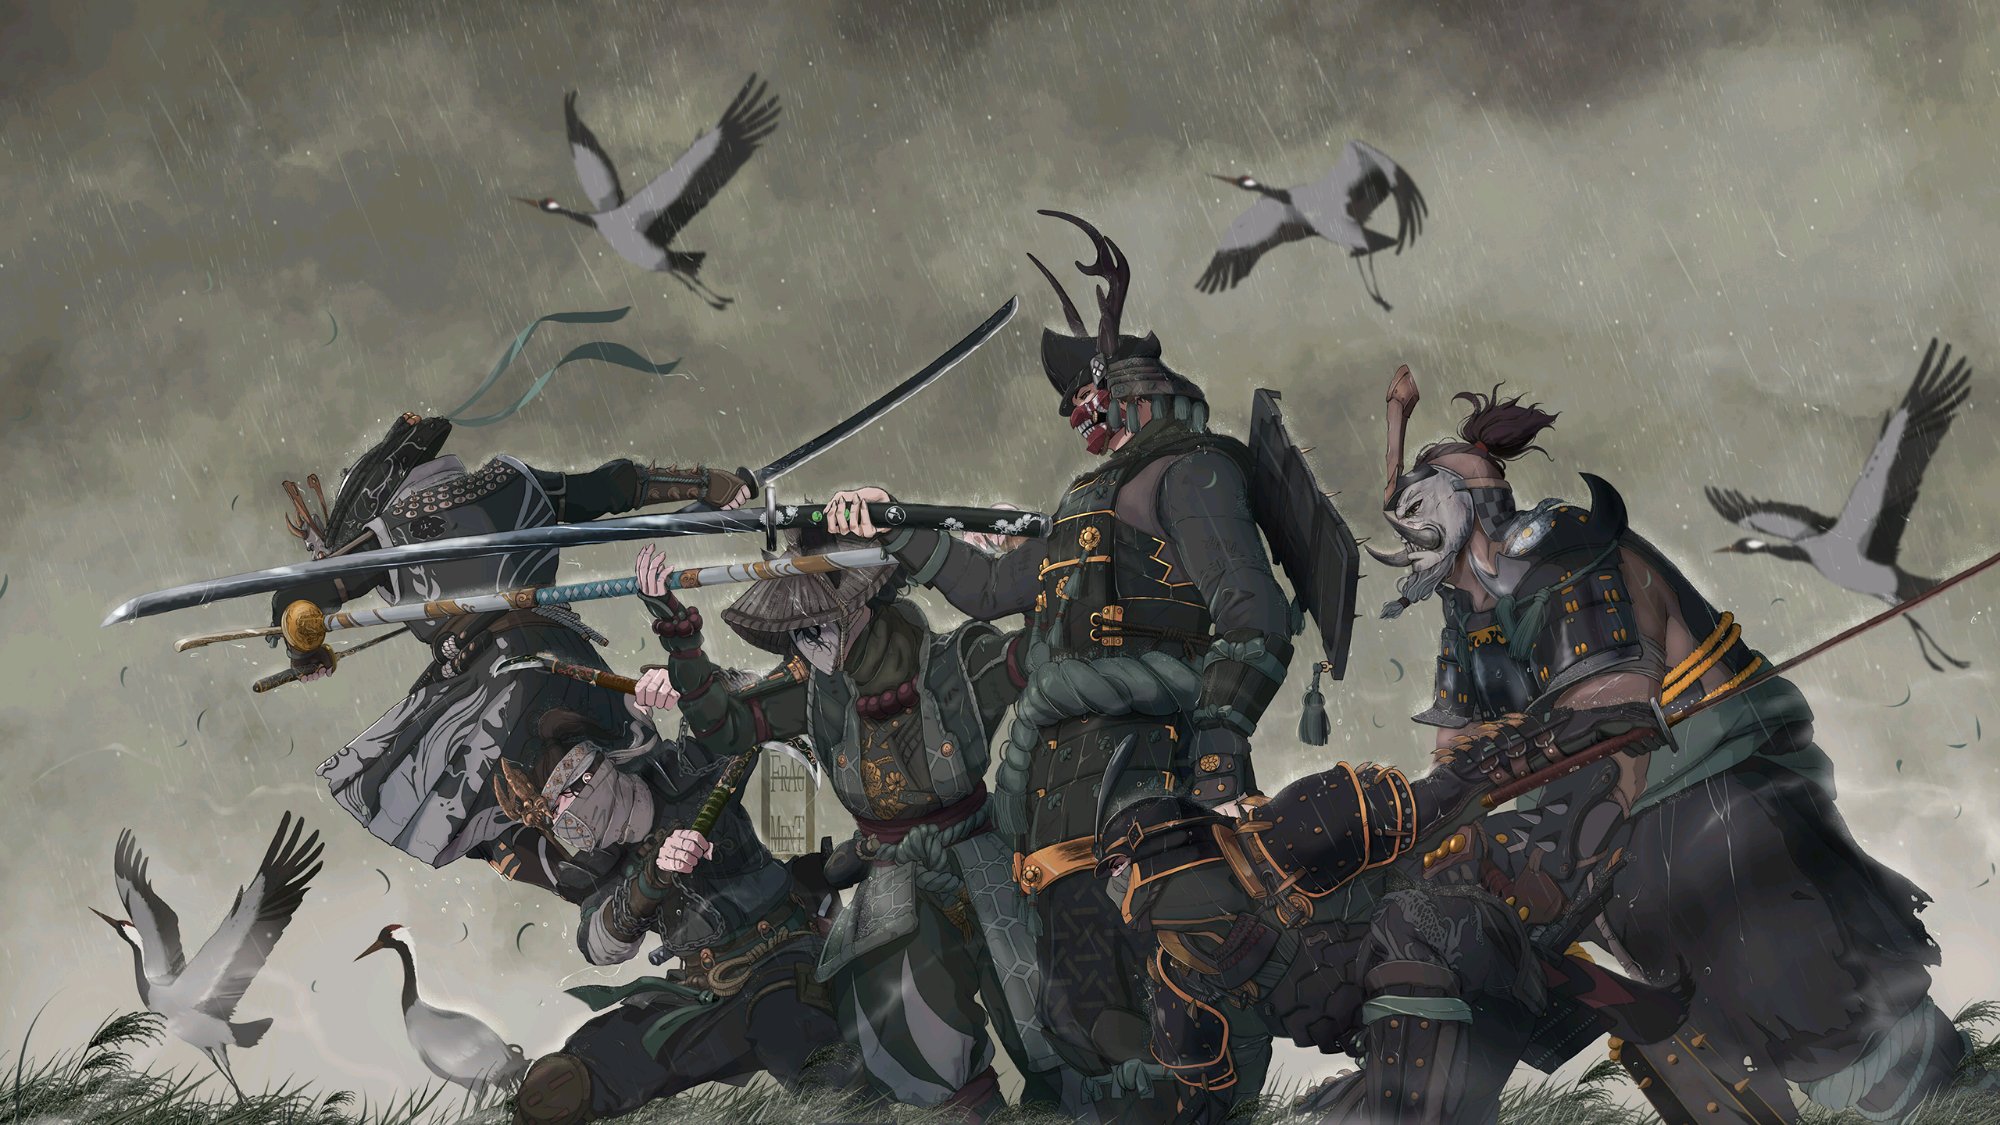 Anime 2000x1125 For Honor samurai blades birds mask FrAg MenT